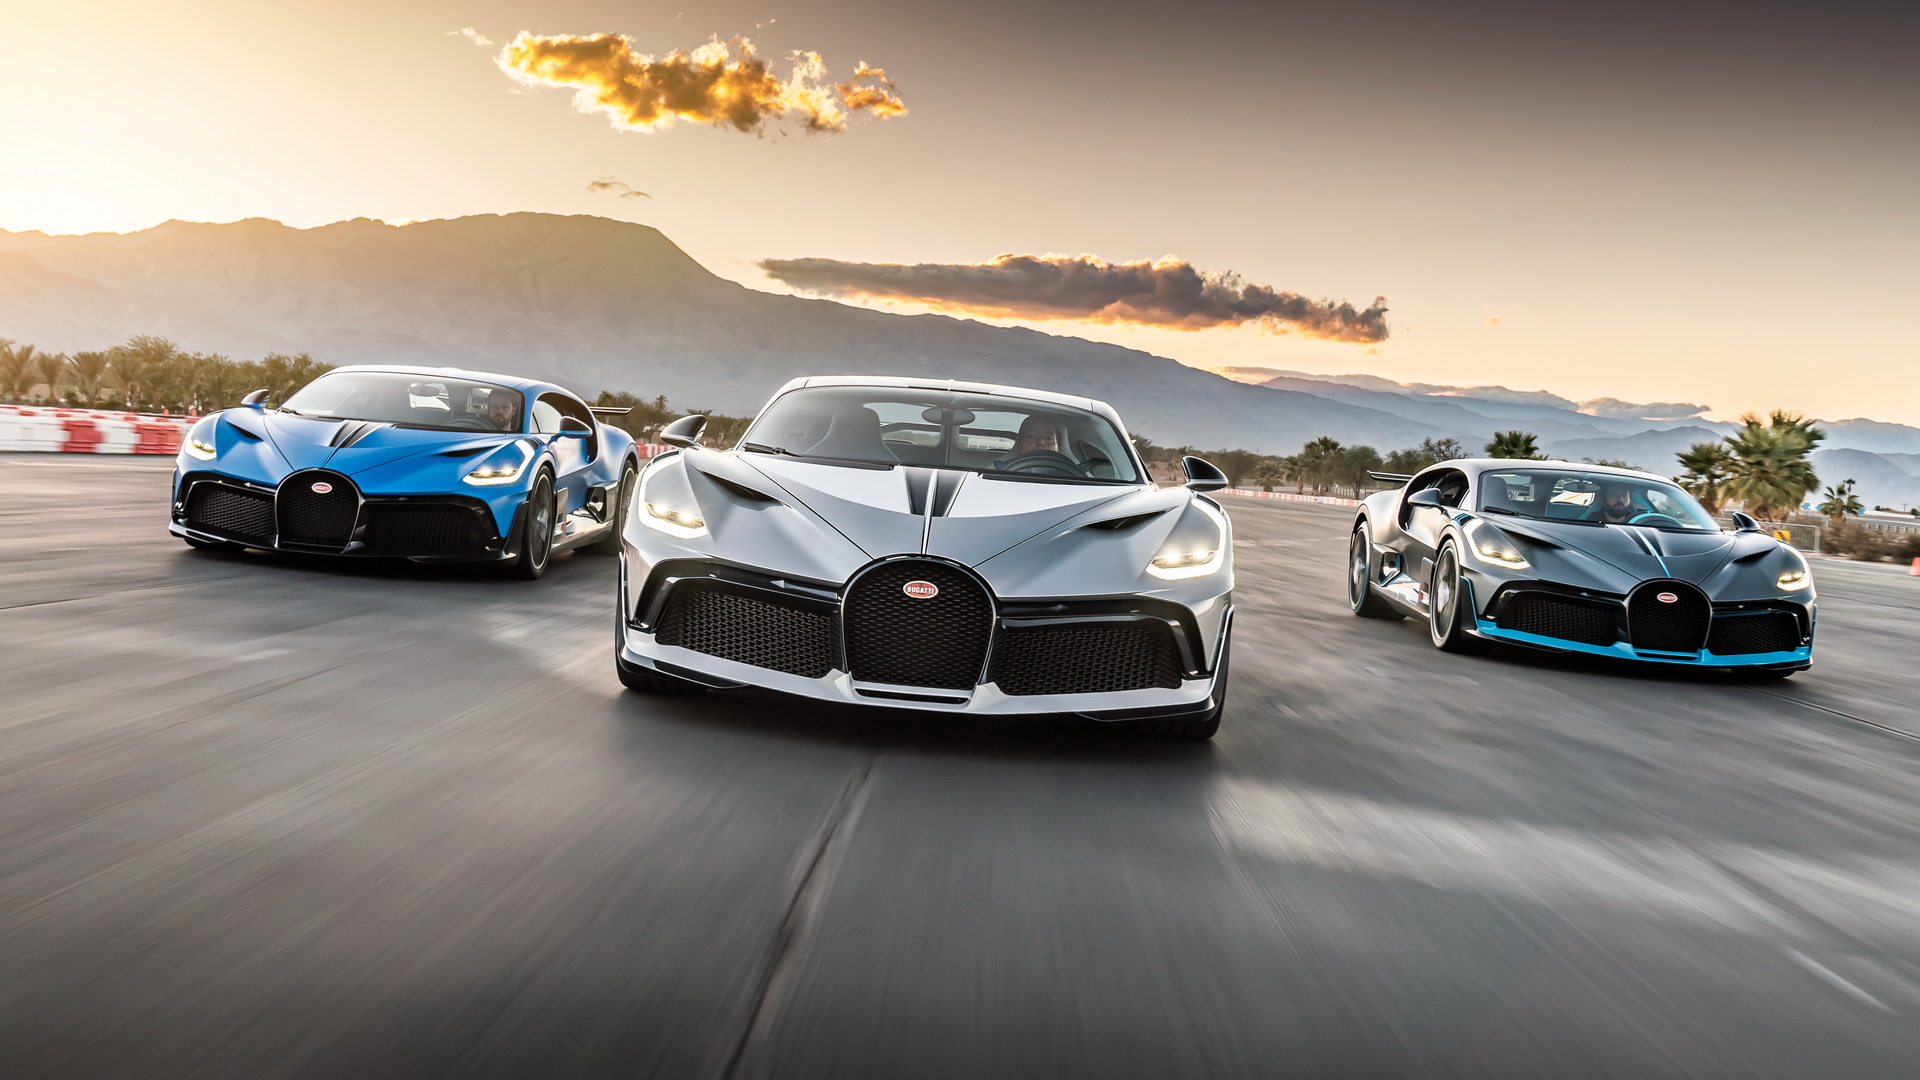 Bugatti Divo, R280 million trio, Delivered in California, Exclusive auto, 1920x1080 Full HD Desktop